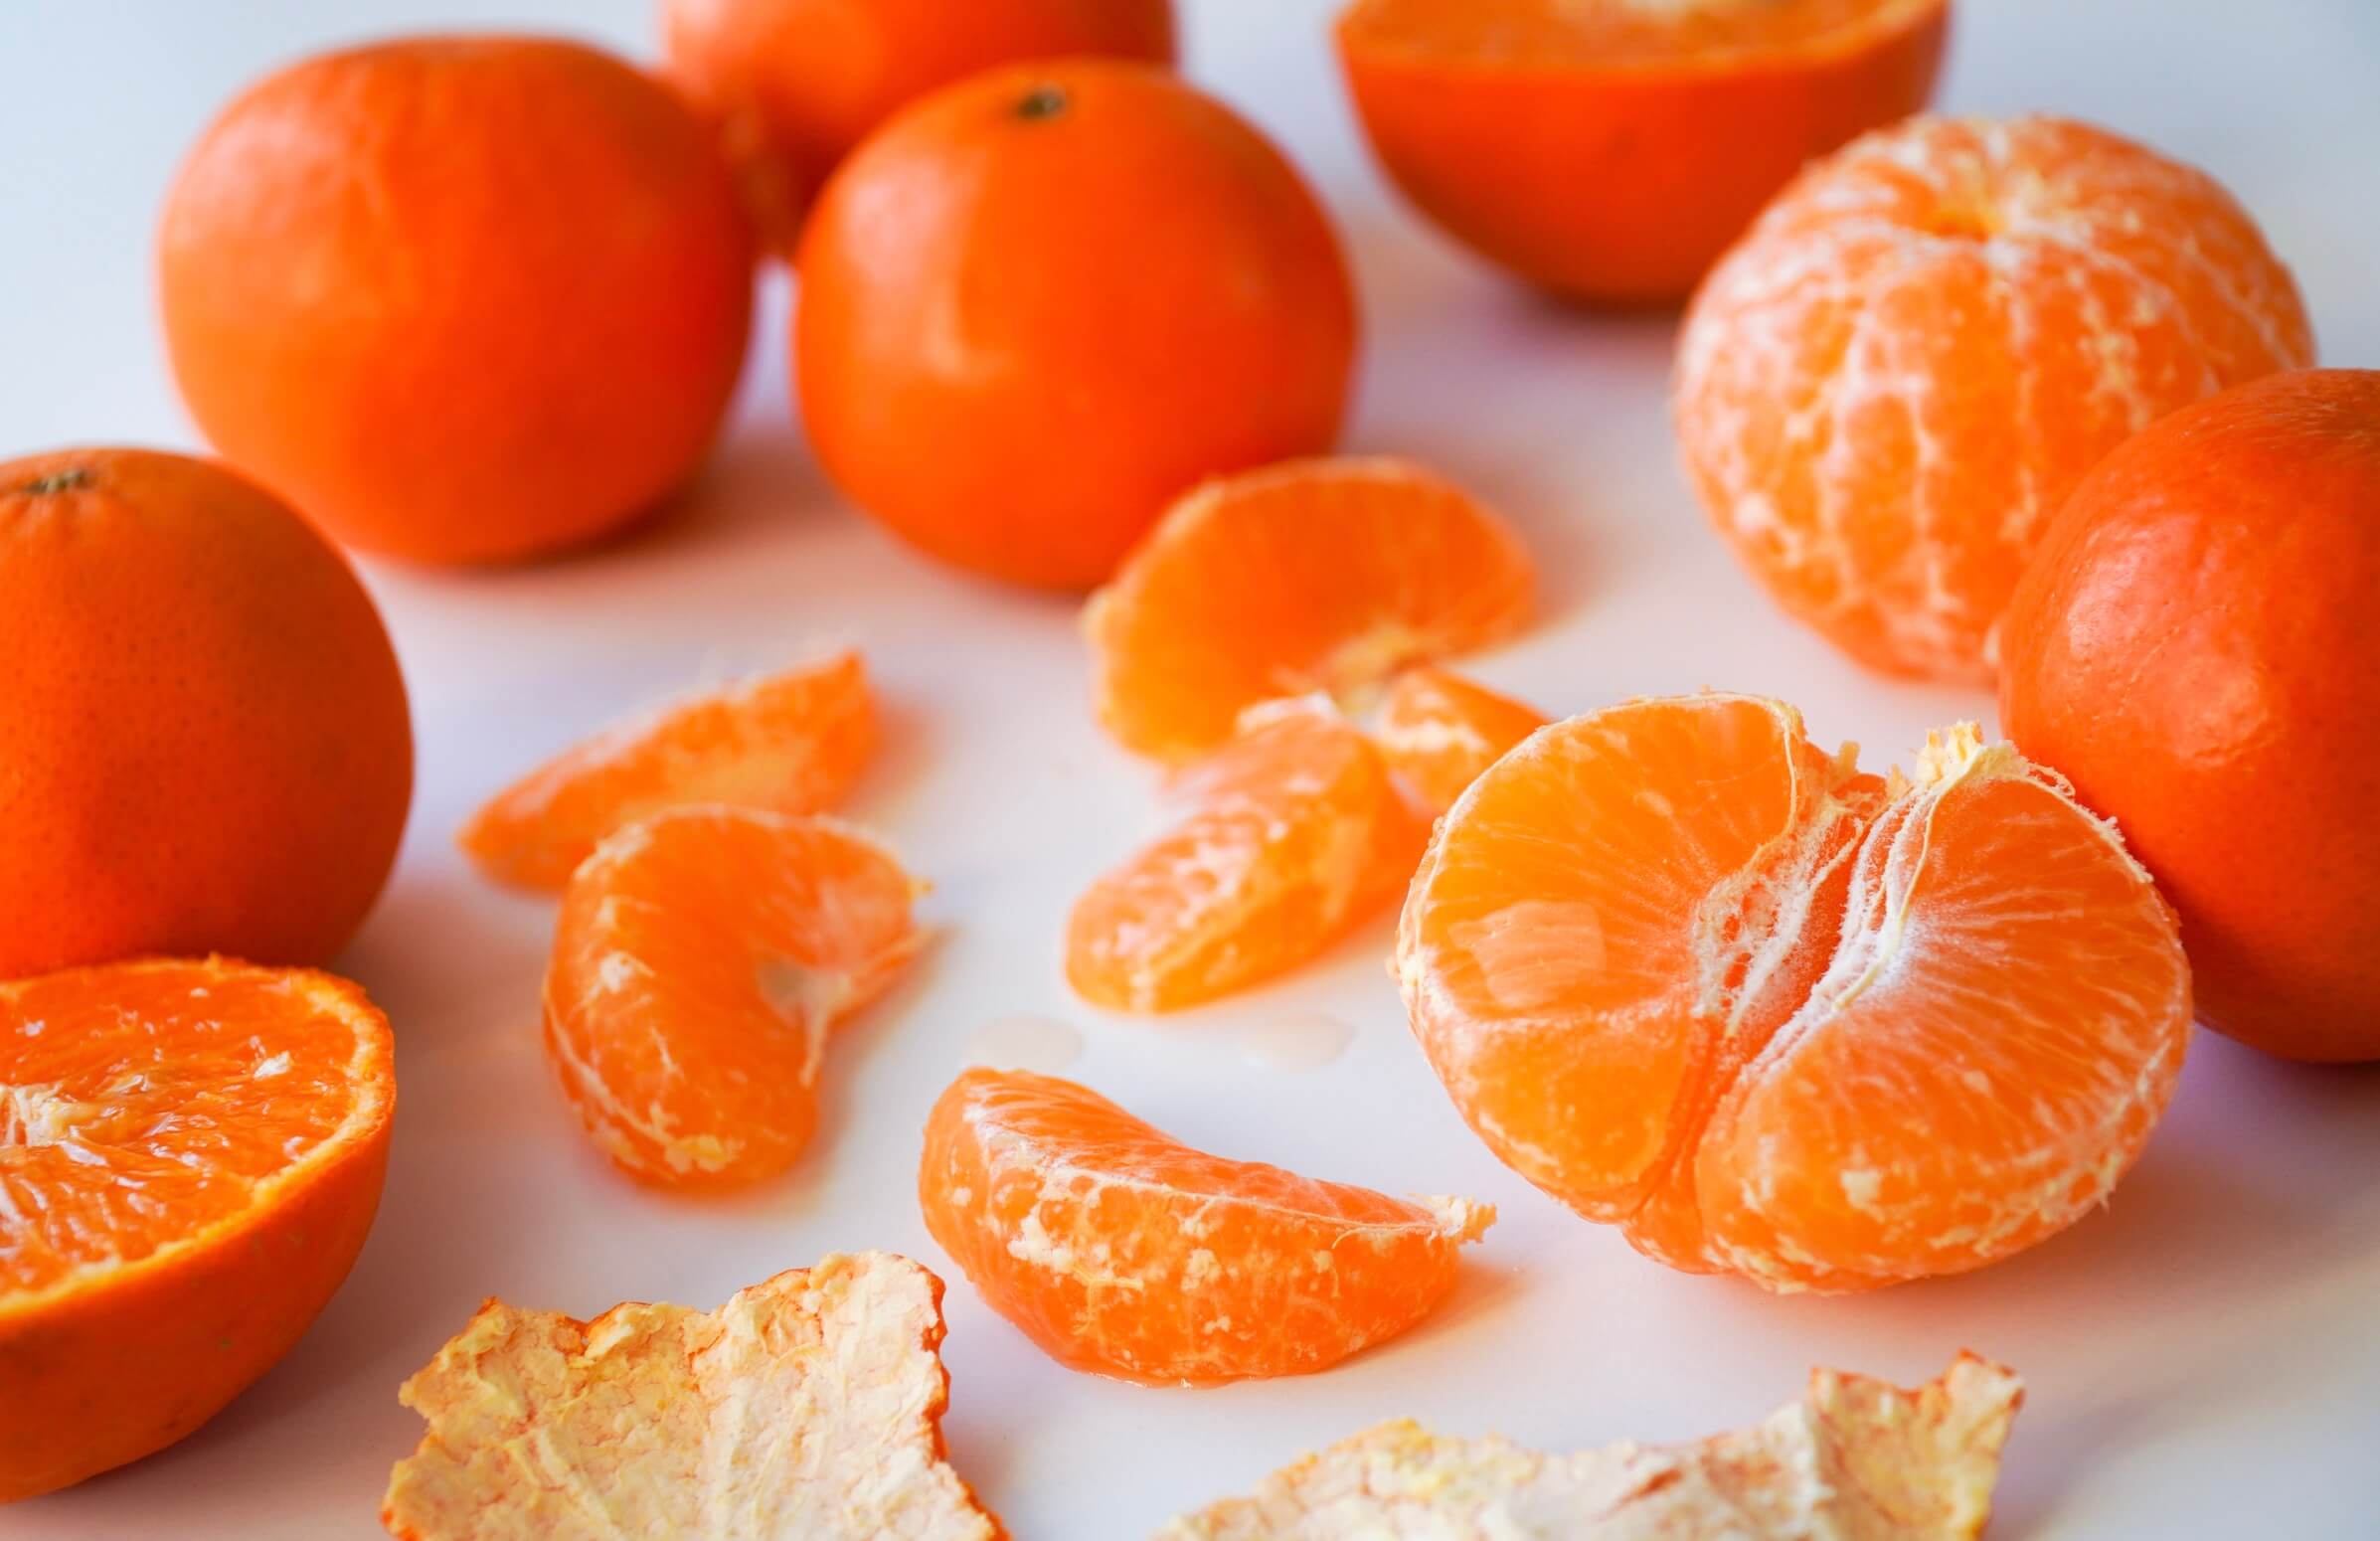 mandarijn